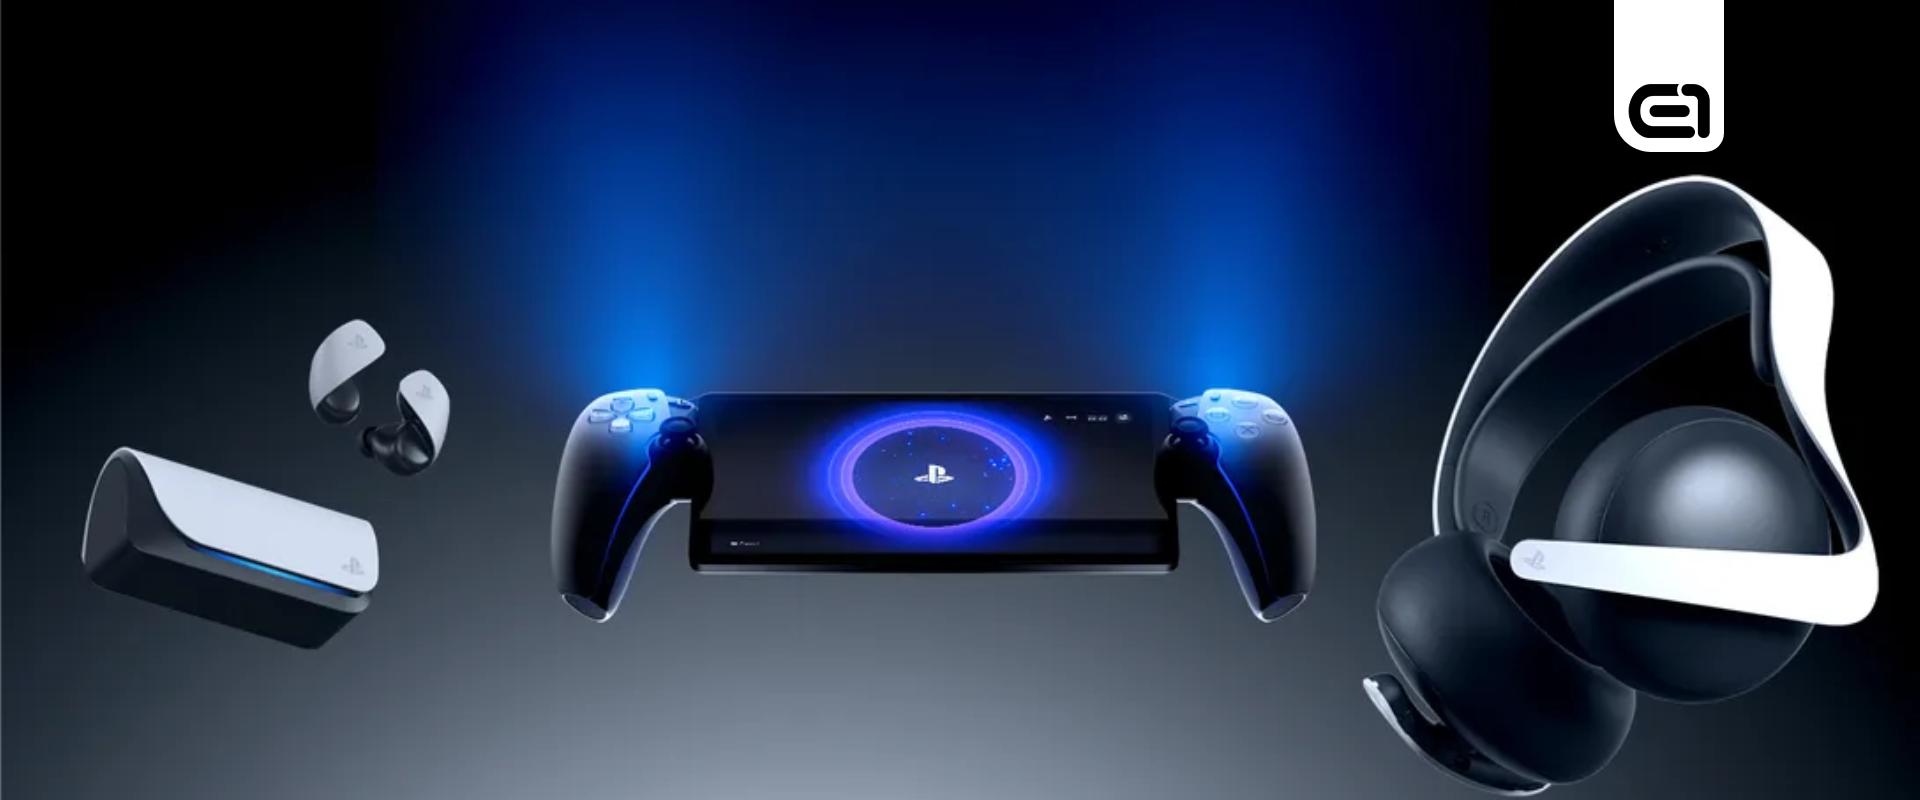 Még idén megjelenik a Sony új kézikonzolja, de megéri az árát?